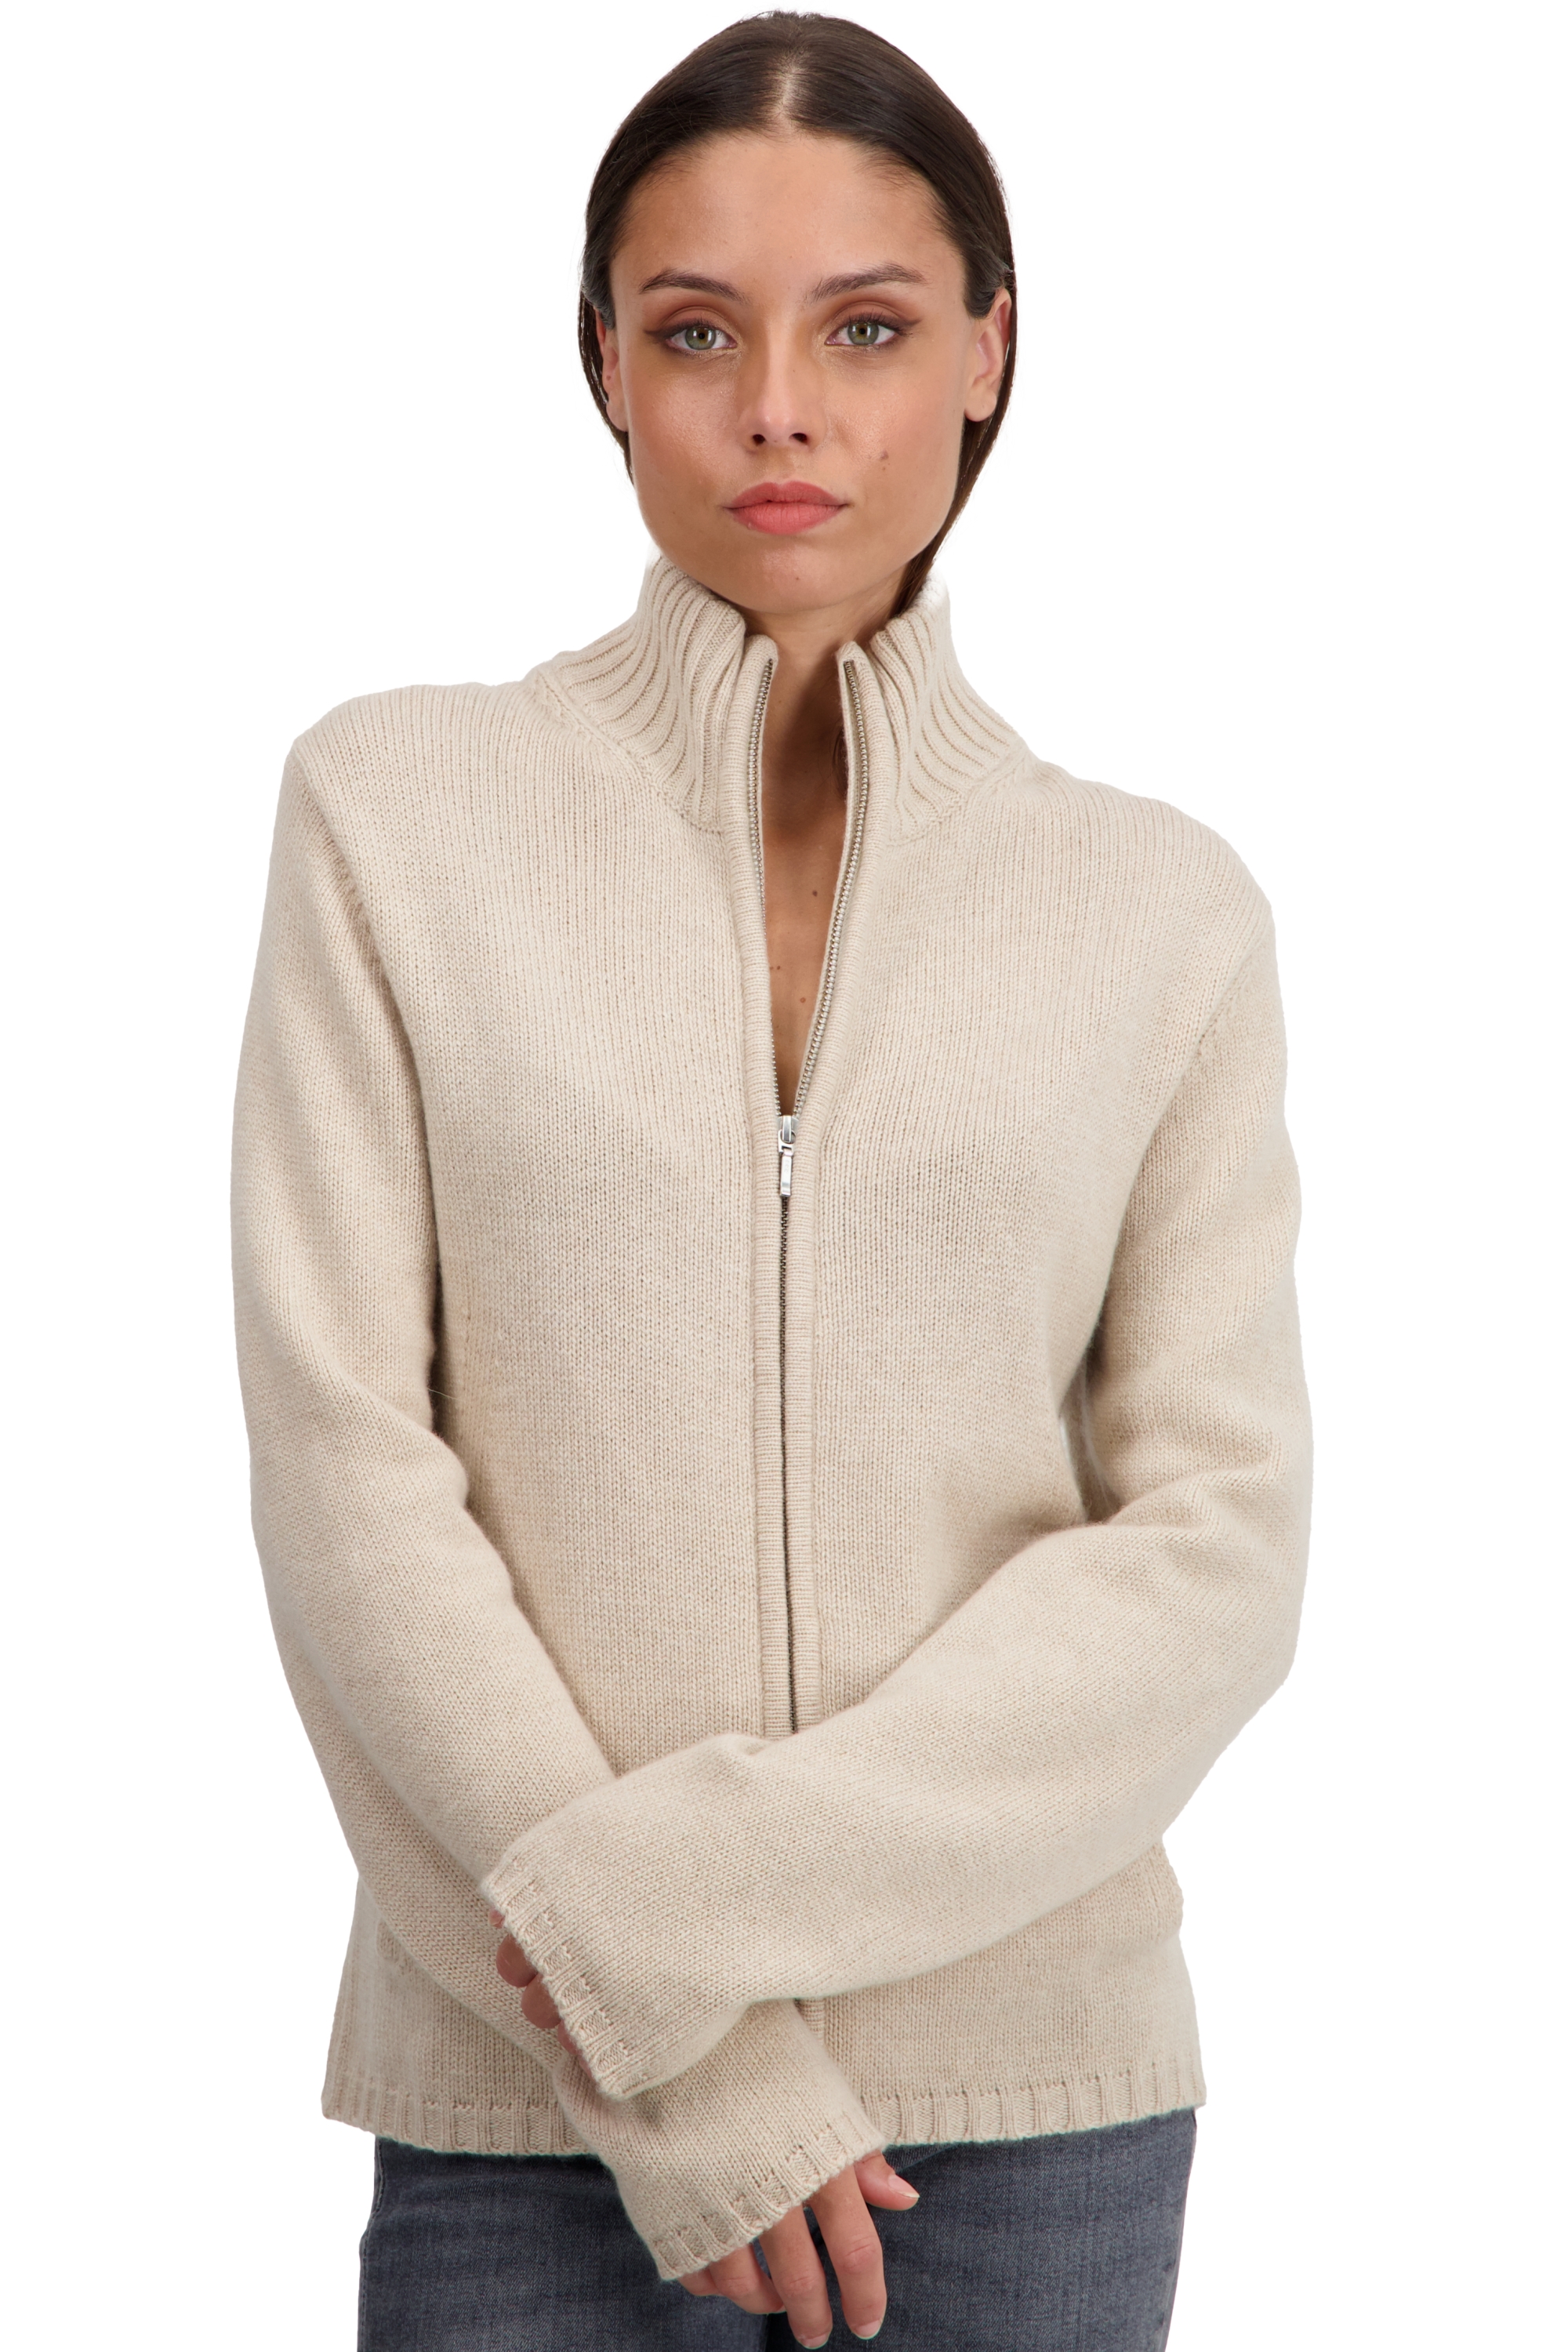 Cachemire pull femme zip capuche elodie natural beige 3xl